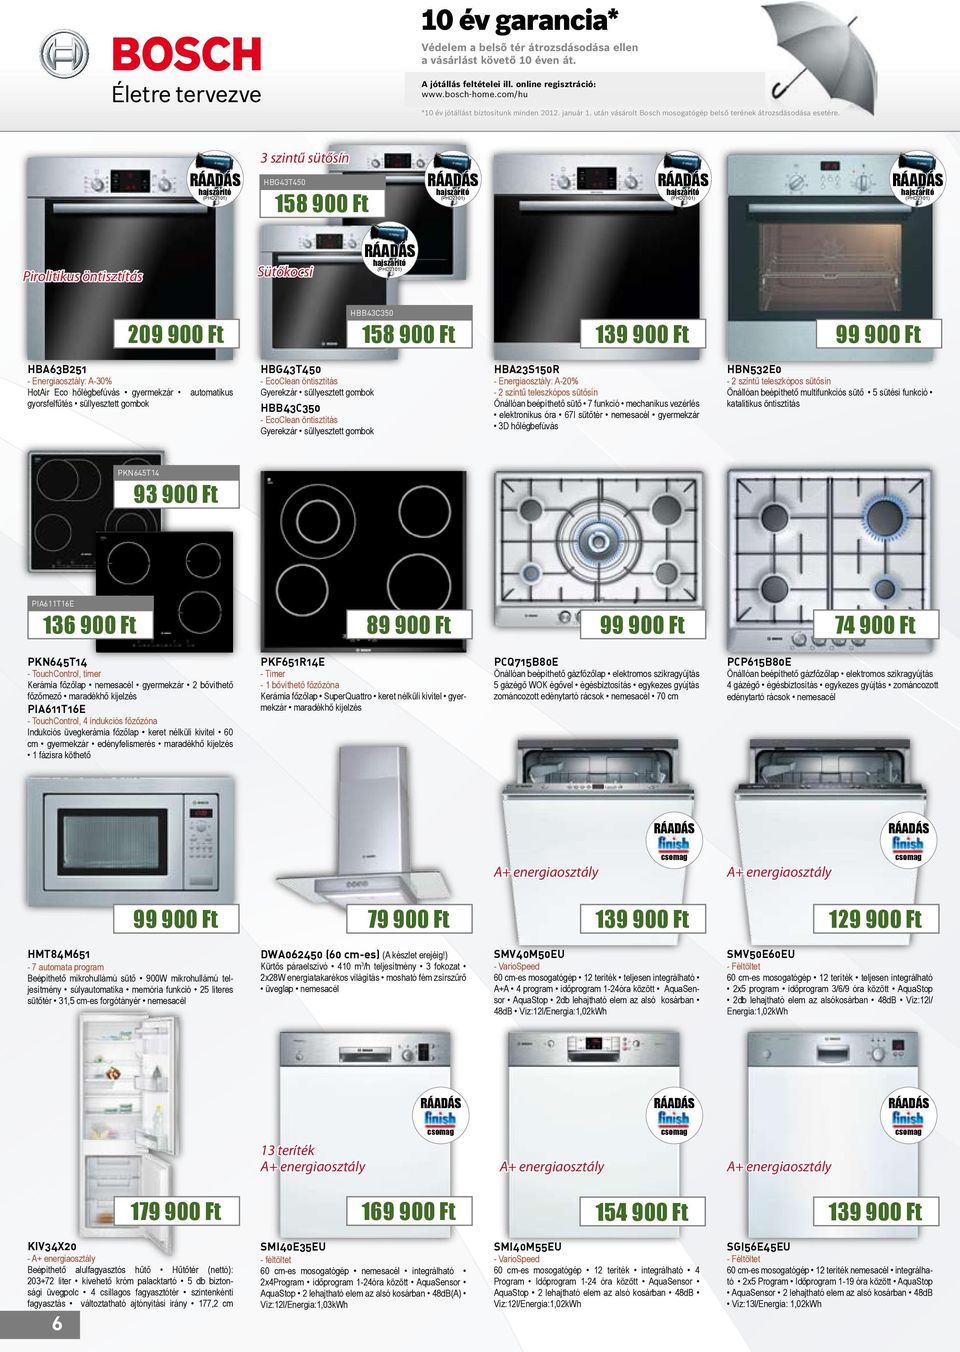 január 1. után vásárolt Bosch mosogatógép belső terének átrozsdásodása esetére. *10 év jótállást biztosítunk minden 2012. január 1.